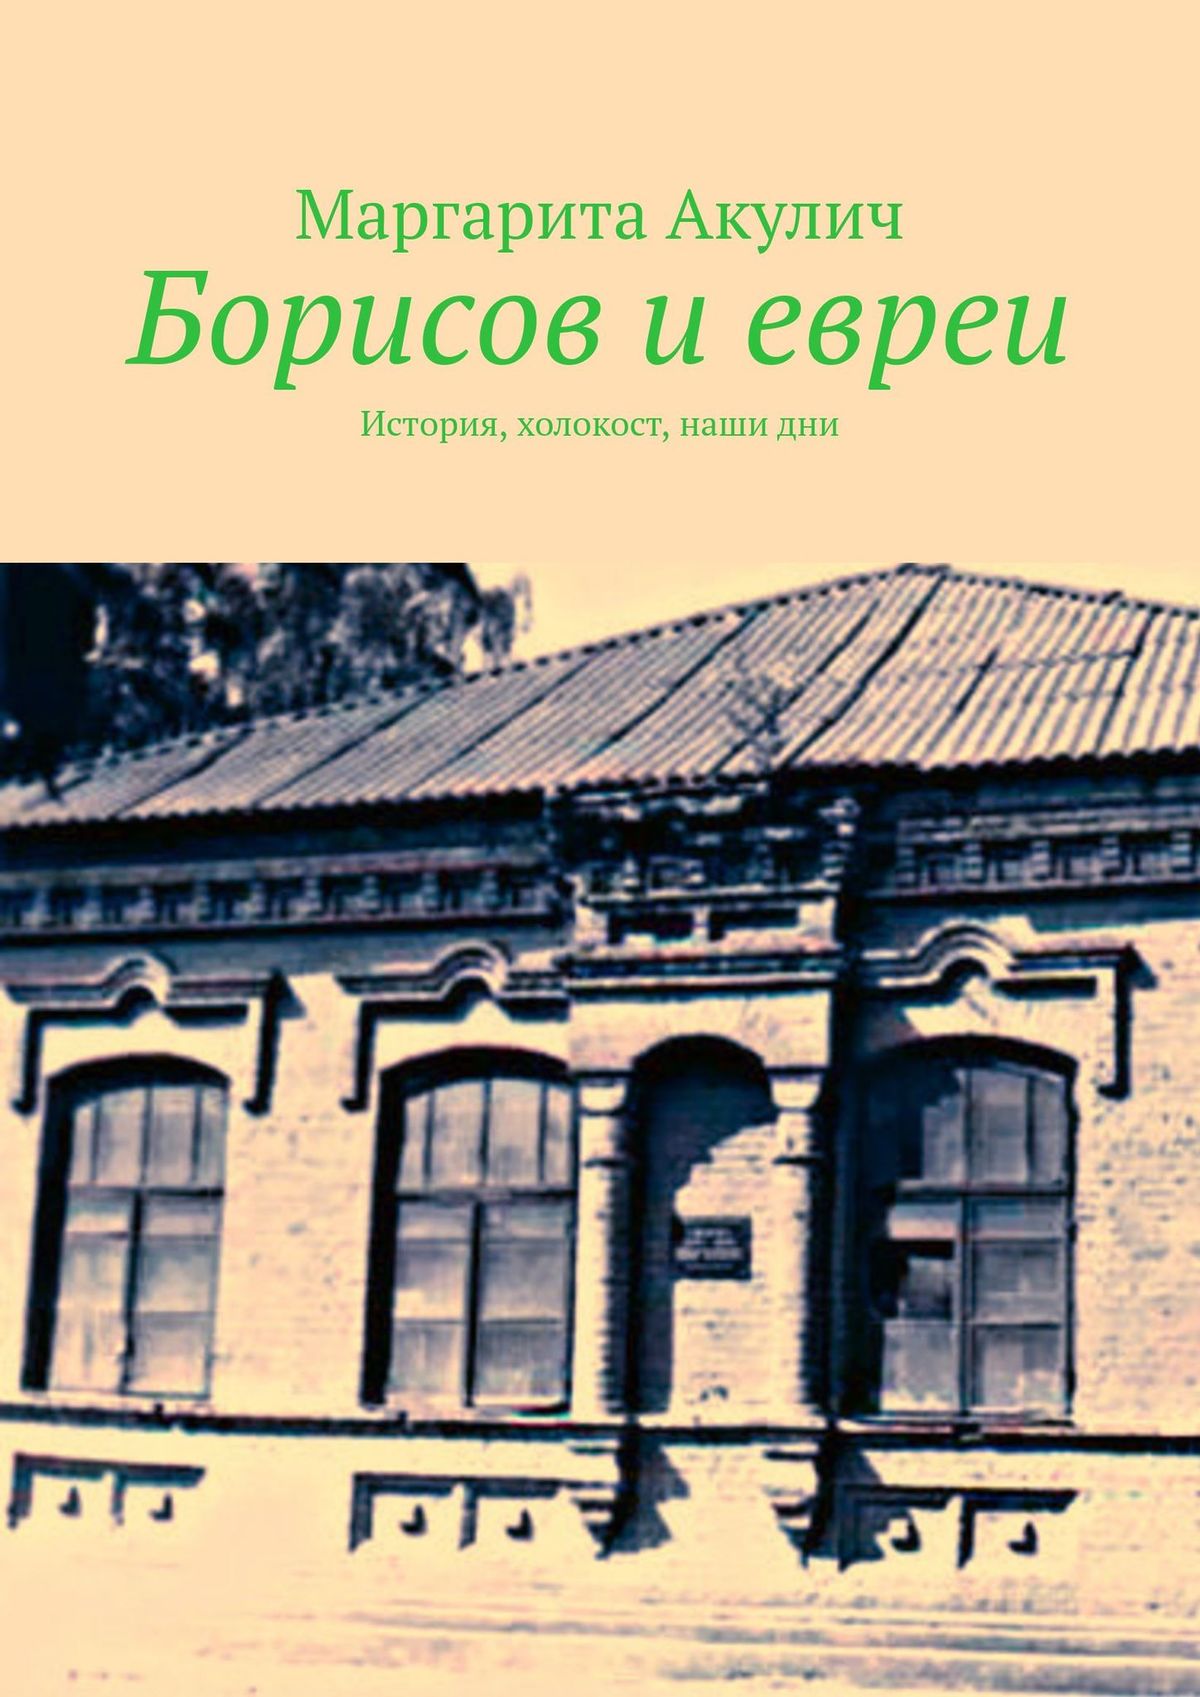 Книга Борисов и евреи из серии , созданная Маргарита Акулич, может относится к жанру История. Стоимость книги Борисов и евреи  с идентификатором 36329613 составляет 140.00 руб.